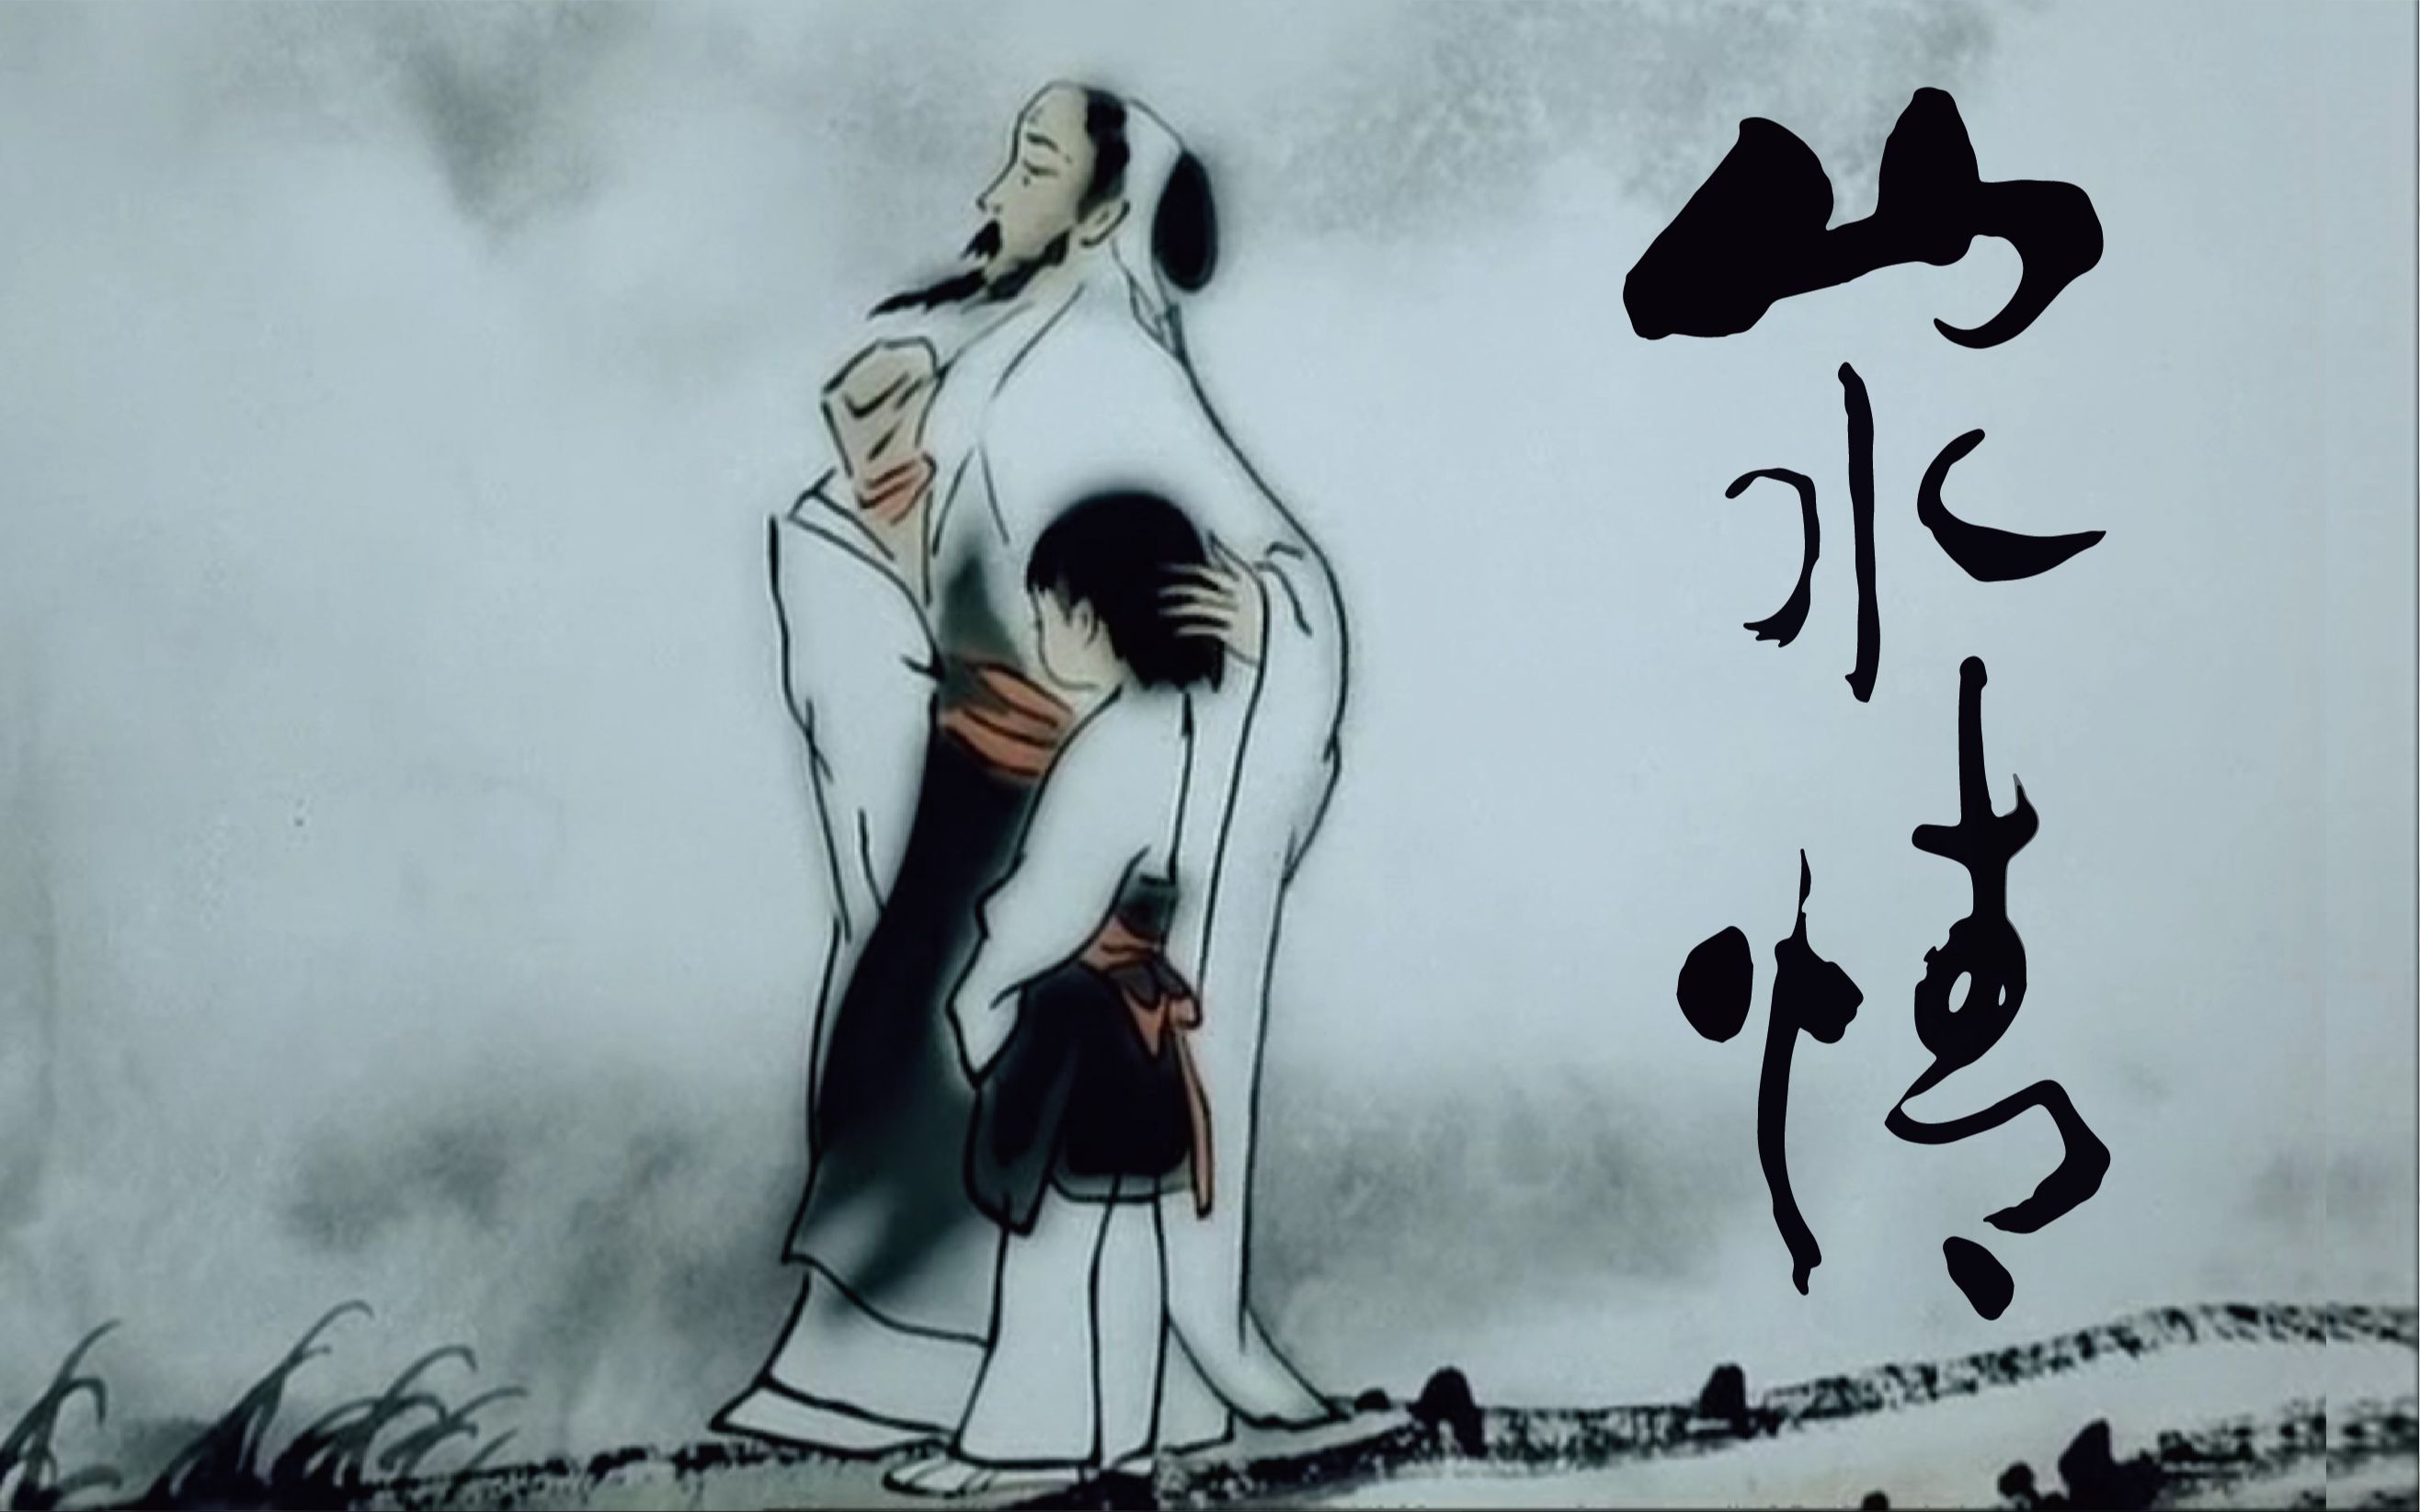 中国第一部水墨动画片图片